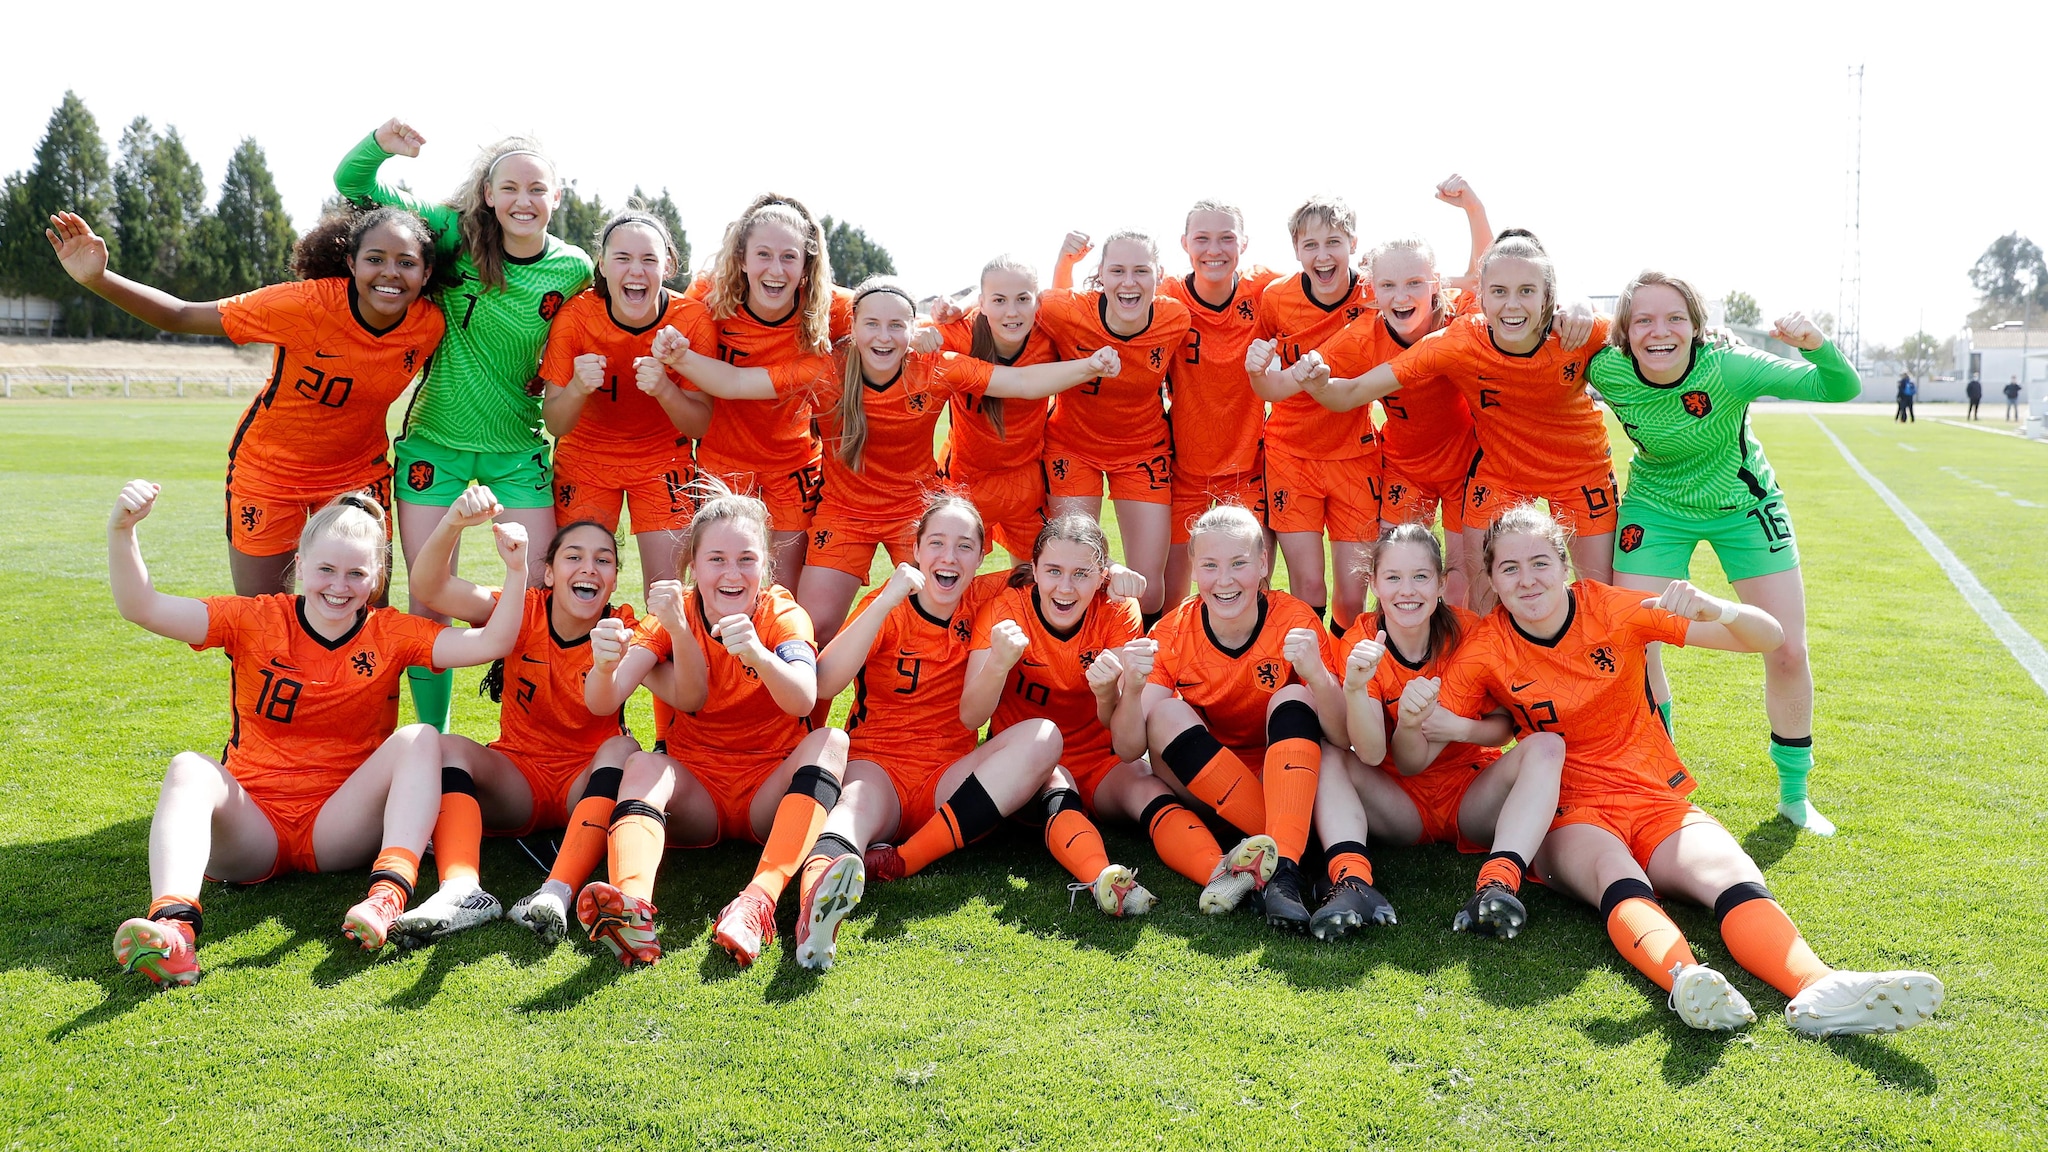 2021/22 EK Dames Onder-17, Ronde 2: Finale Nederland, Denemarken |  Vrouwen onder de 17 jaar